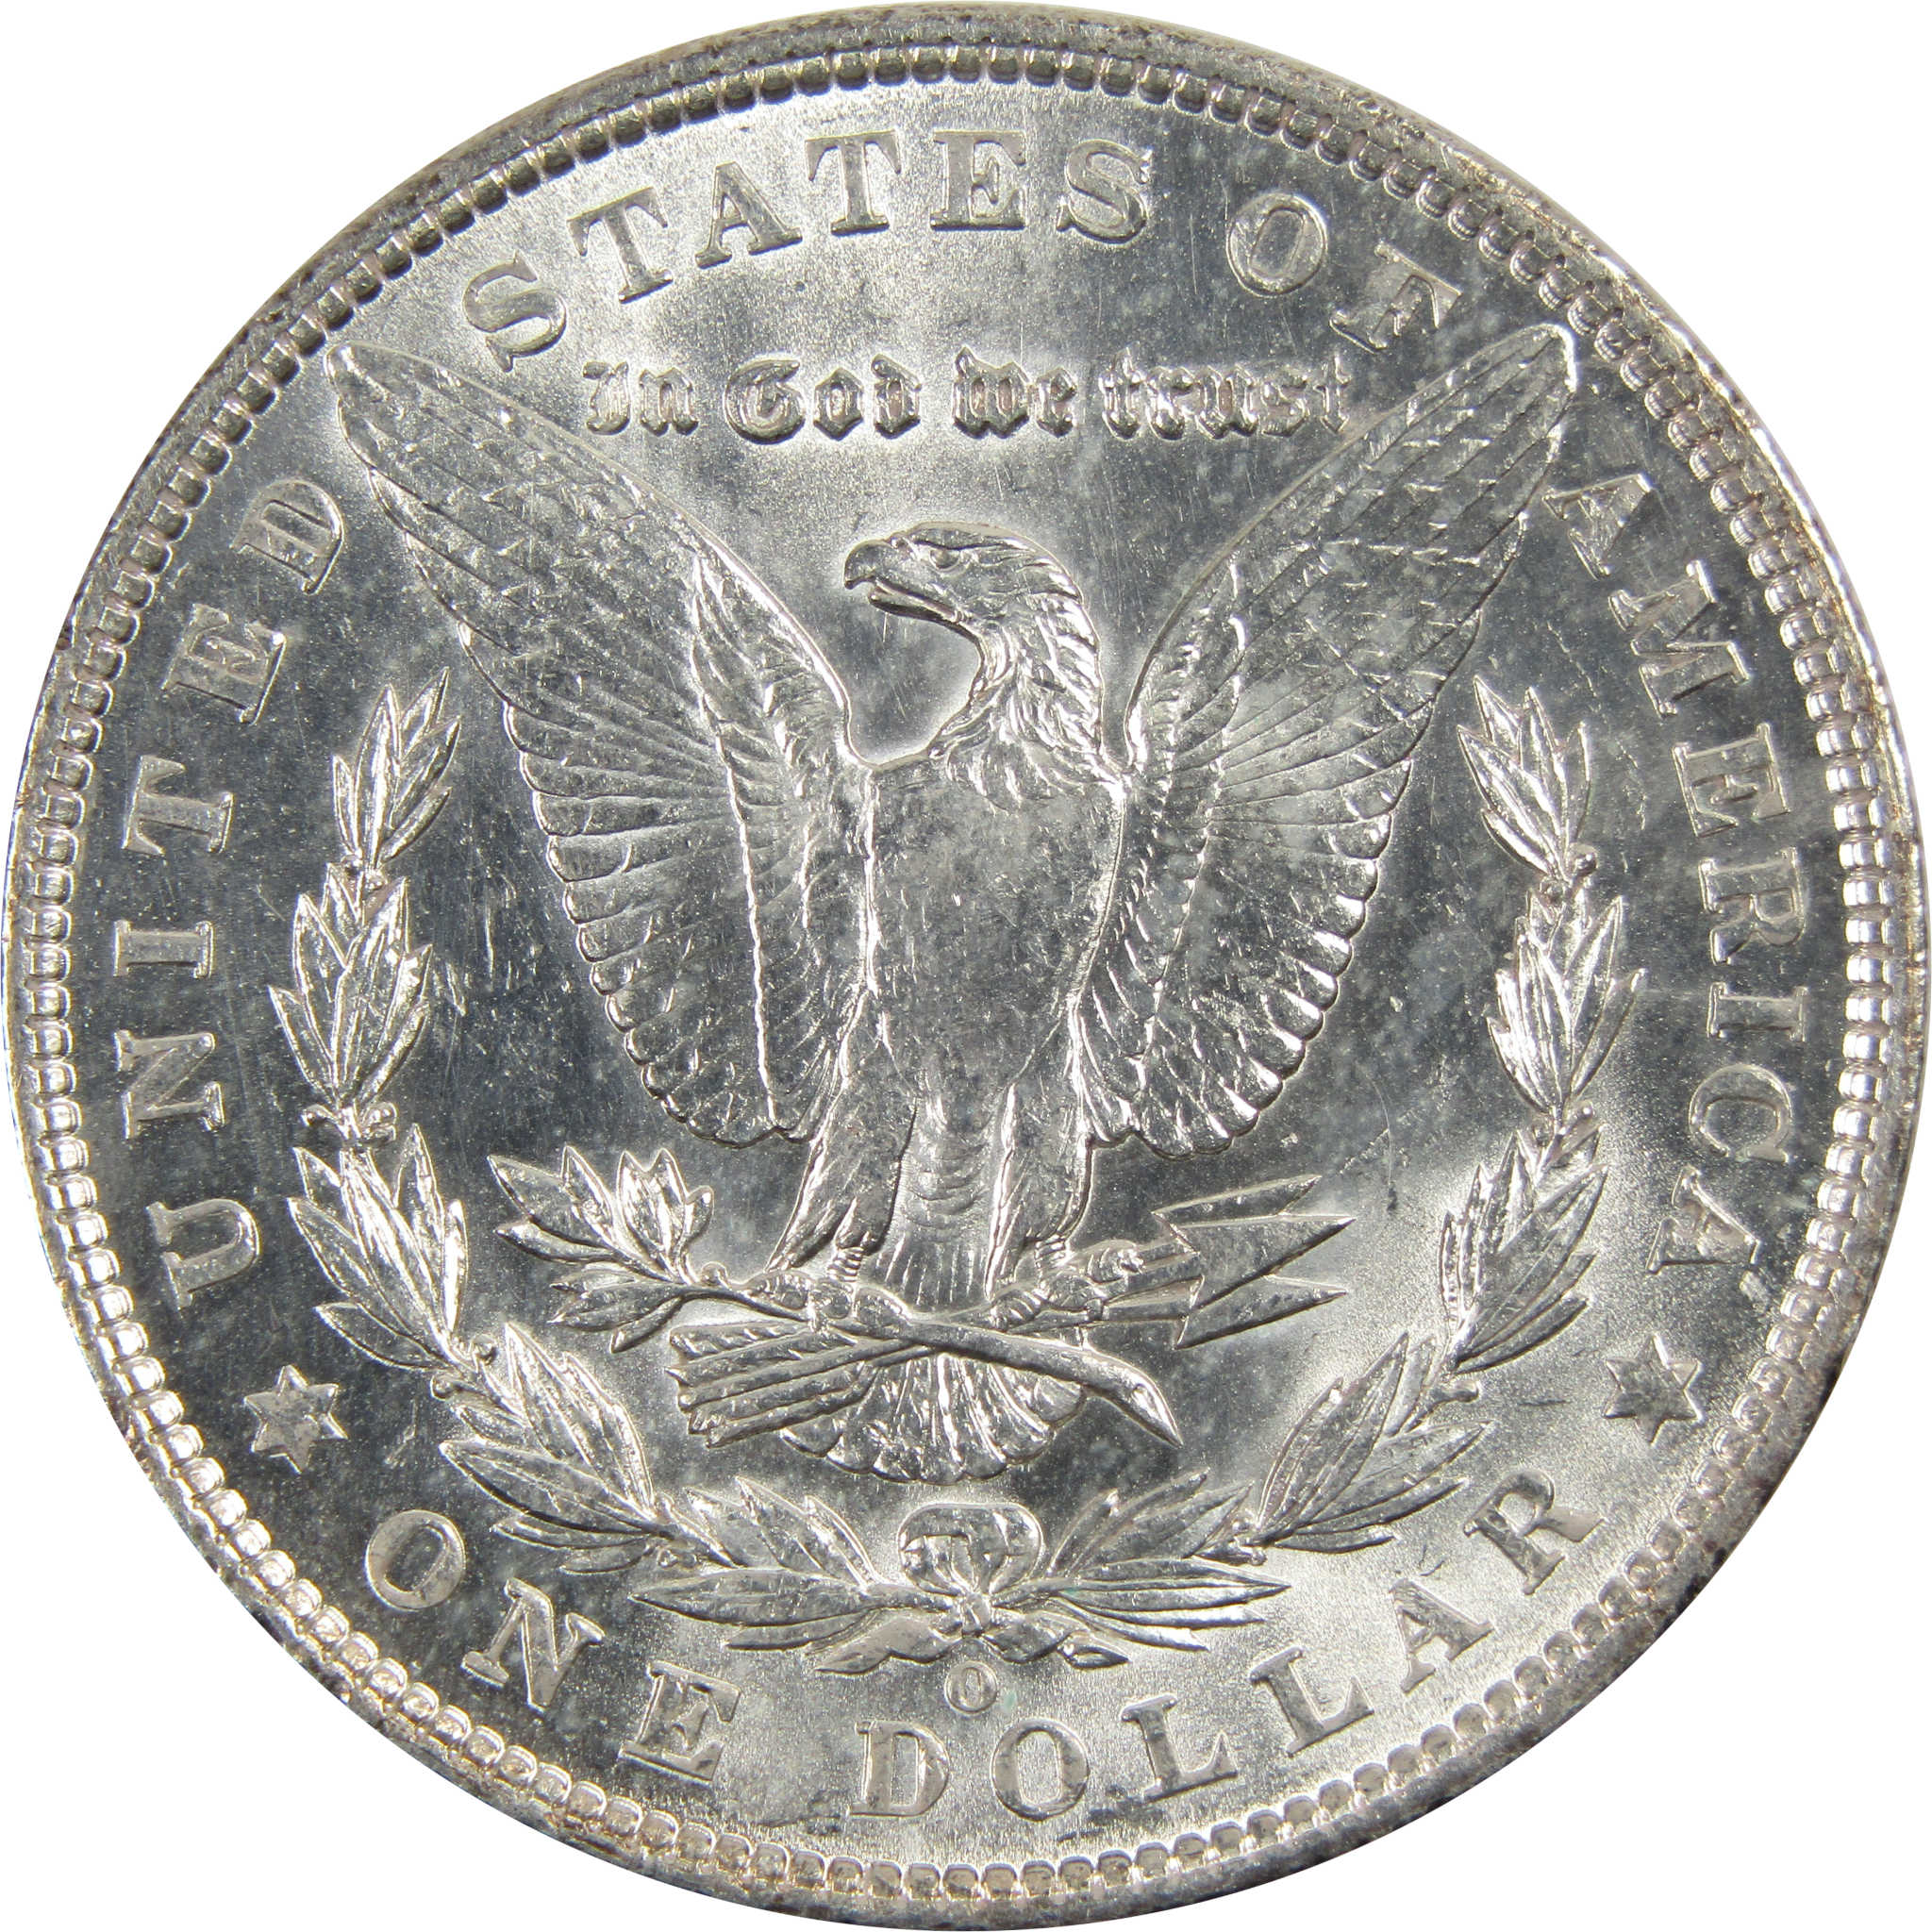 1903 O Morgan Dollar BU Choice Uncirculated 90% Silver $1 SKU:I7916 - Morgan coin - Morgan silver dollar - Morgan silver dollar for sale - Profile Coins &amp; Collectibles